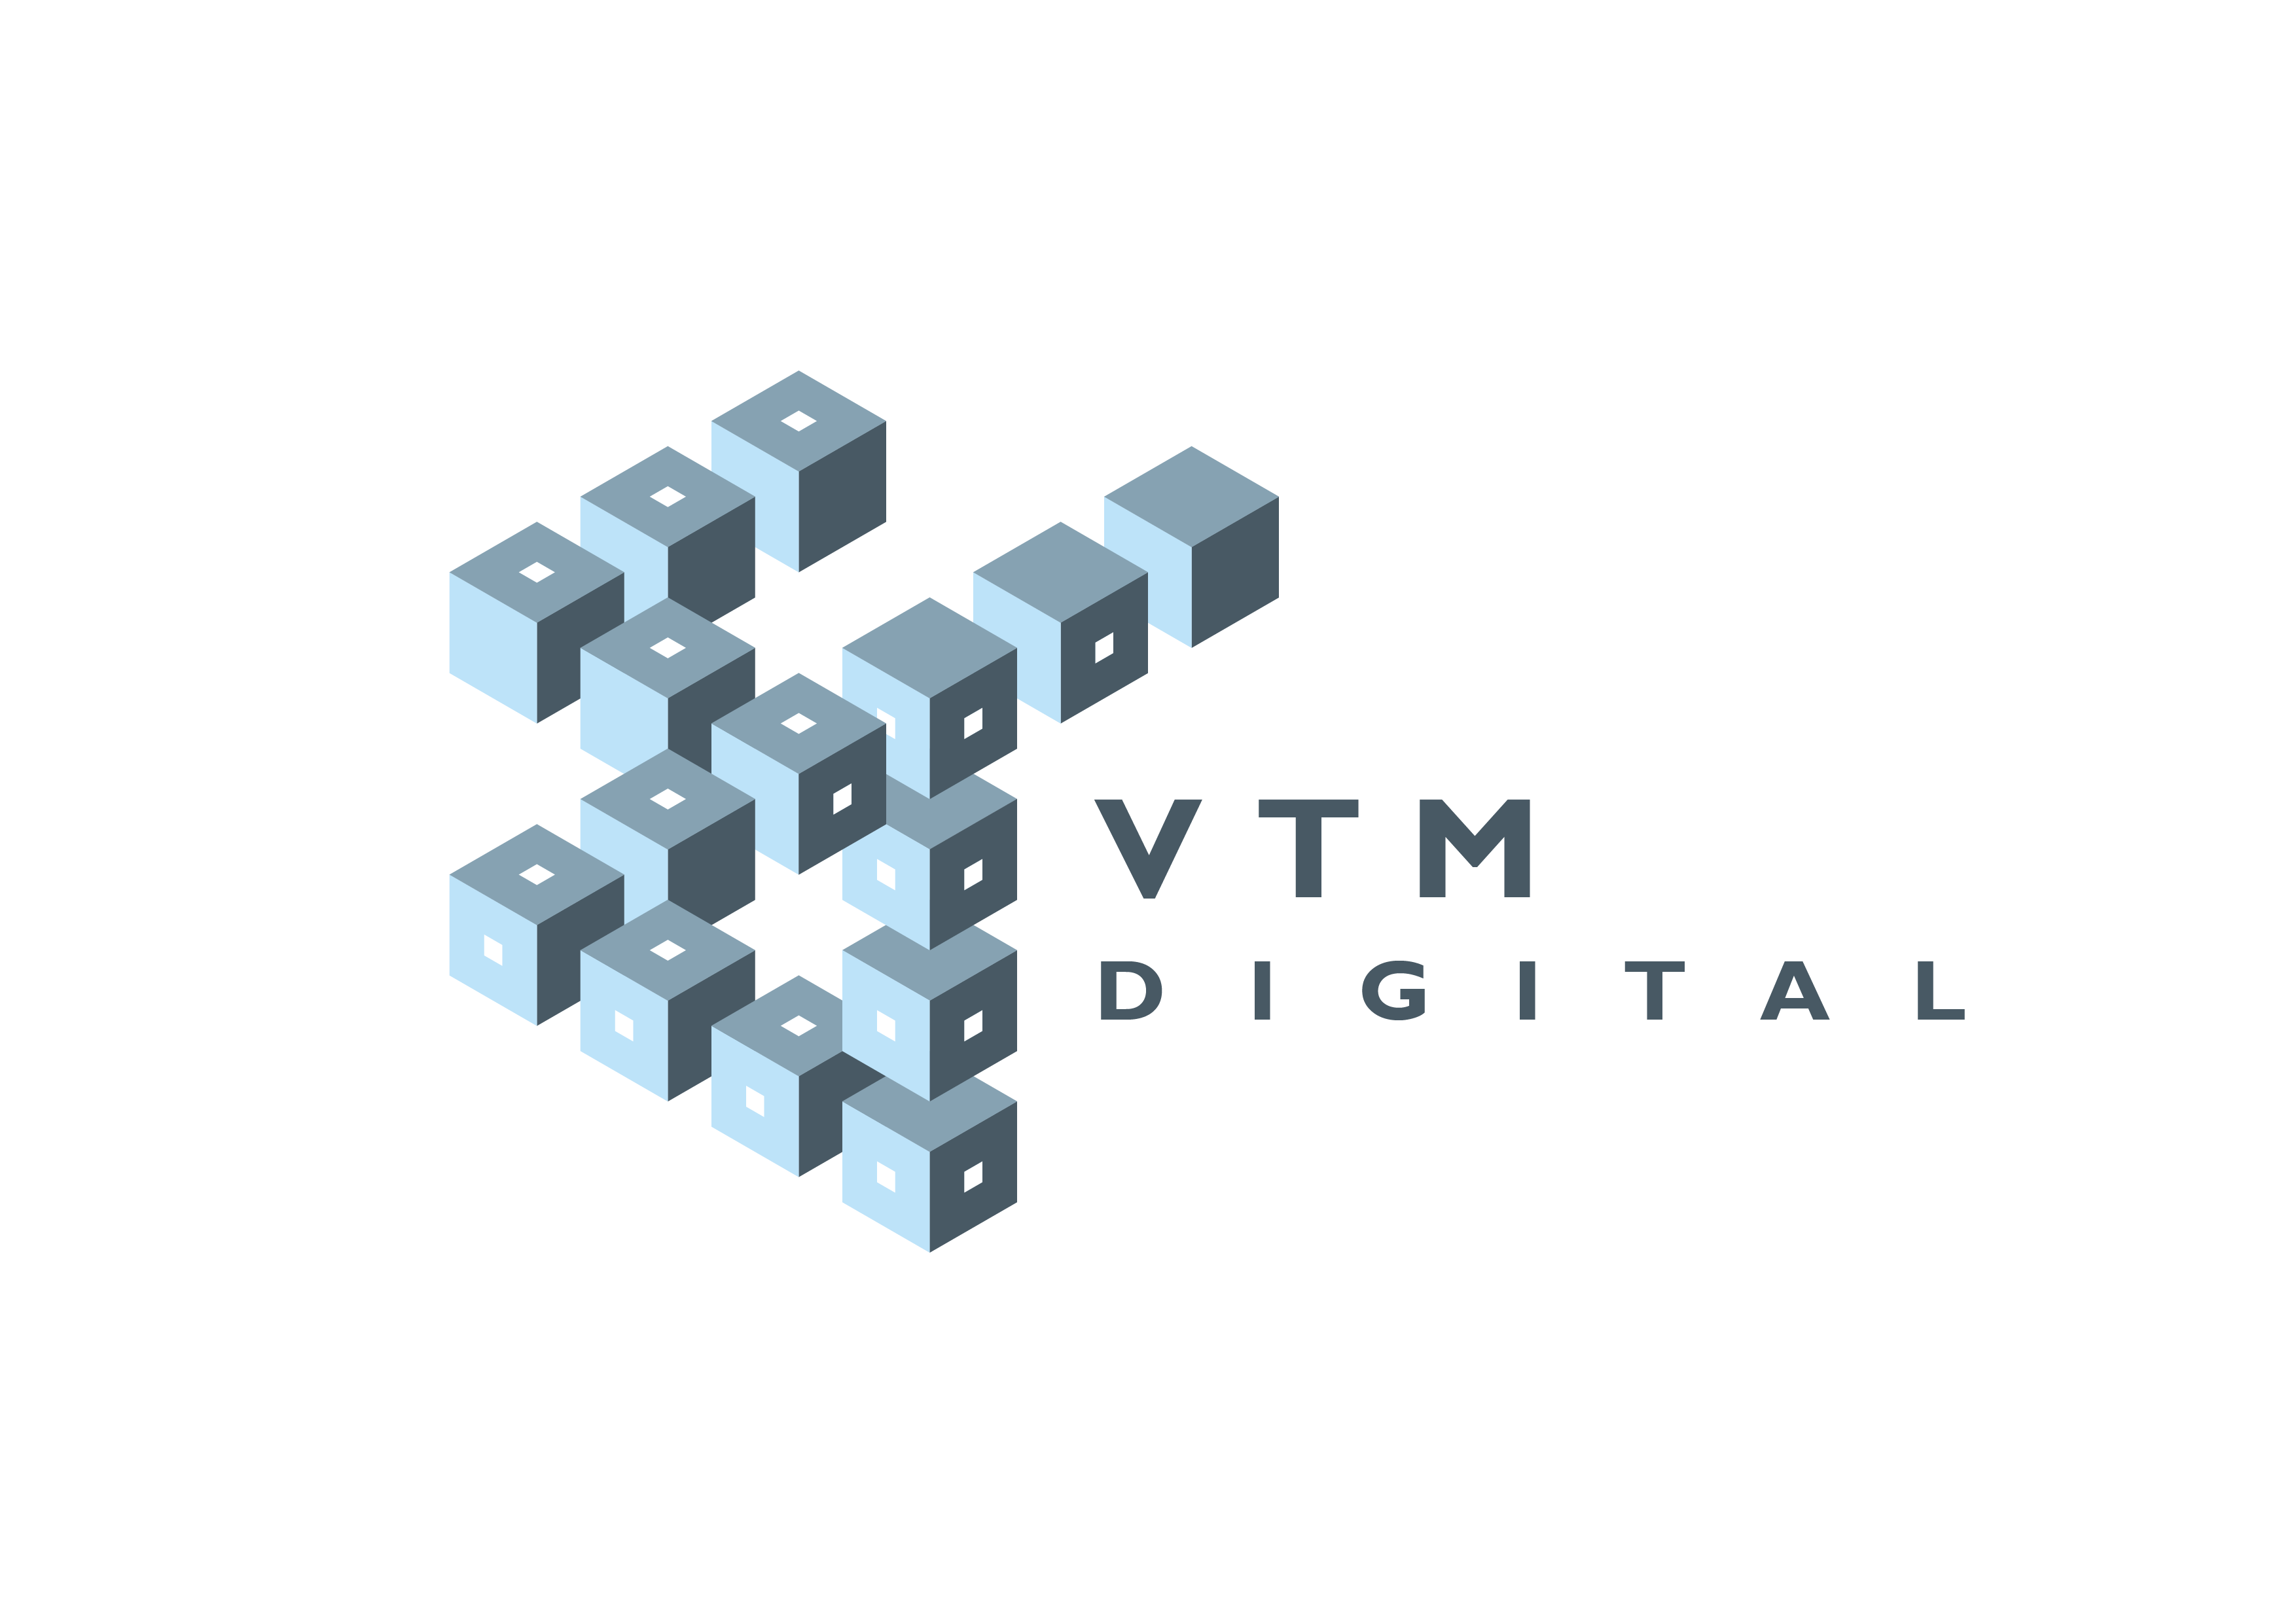 VTM digital limited